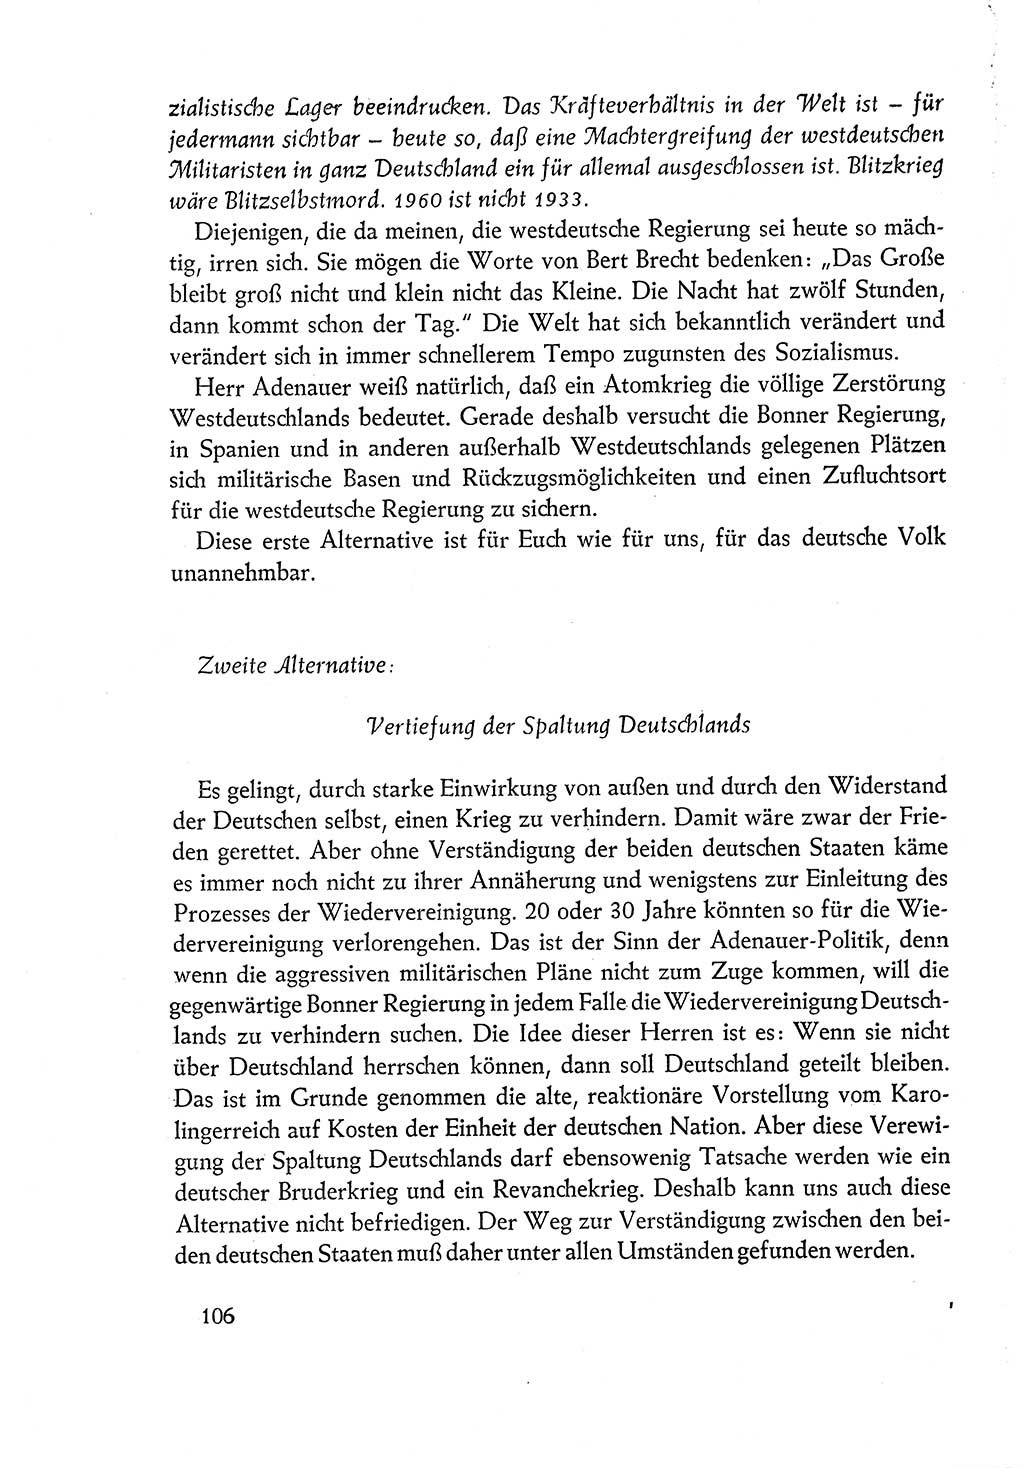 Dokumente der Sozialistischen Einheitspartei Deutschlands (SED) [Deutsche Demokratische Republik (DDR)] 1960-1961, Seite 106 (Dok. SED DDR 1960-1961, S. 106)